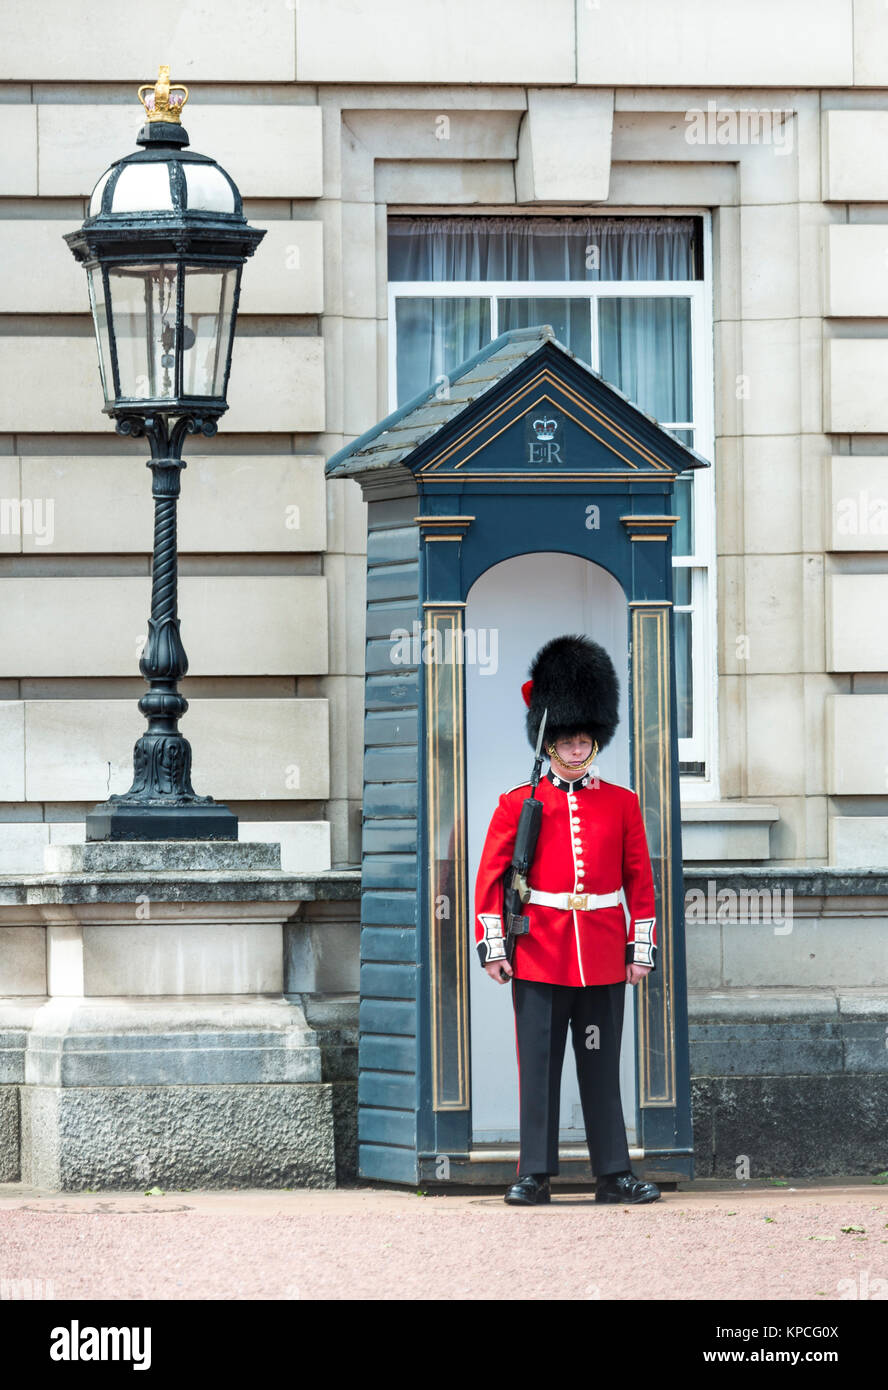 Guardia de seguridad de la Guardia Real con bearskin cap, el Palacio de Buckingham, Londres, Inglaterra, Gran Bretaña Foto de stock